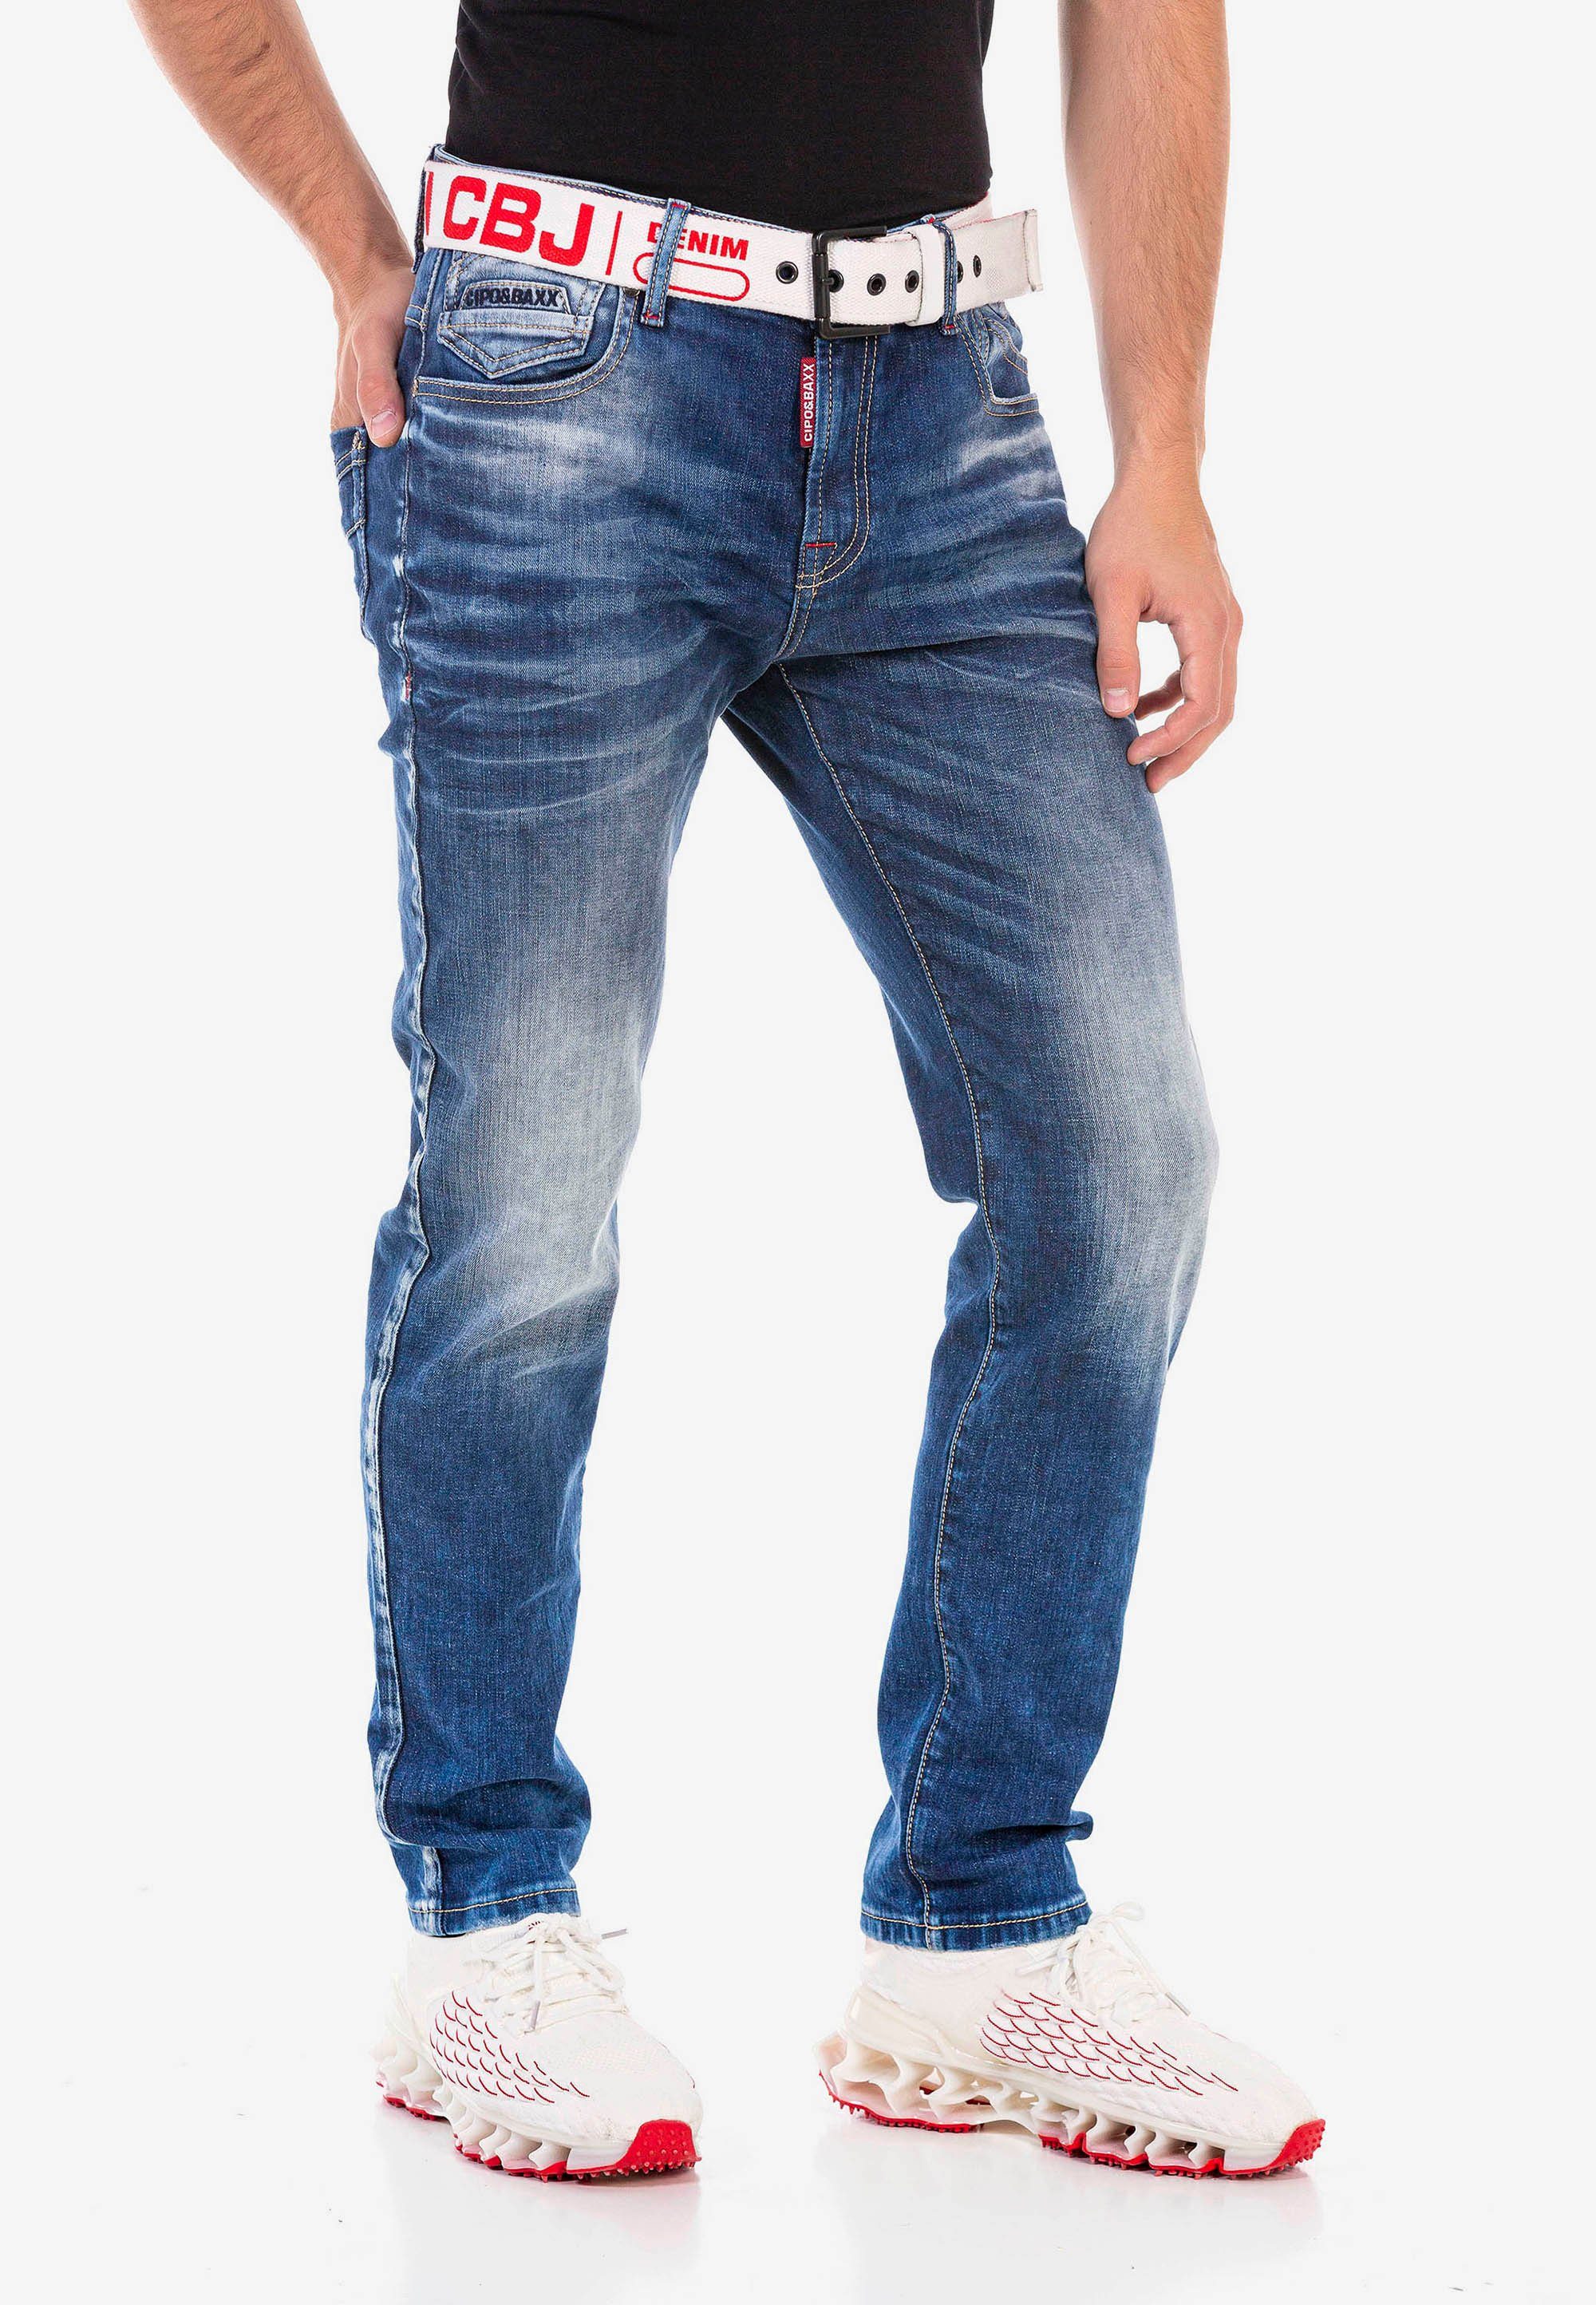 Cipo Baxx Slim-fit-Jeans tollen Stickereien mit &